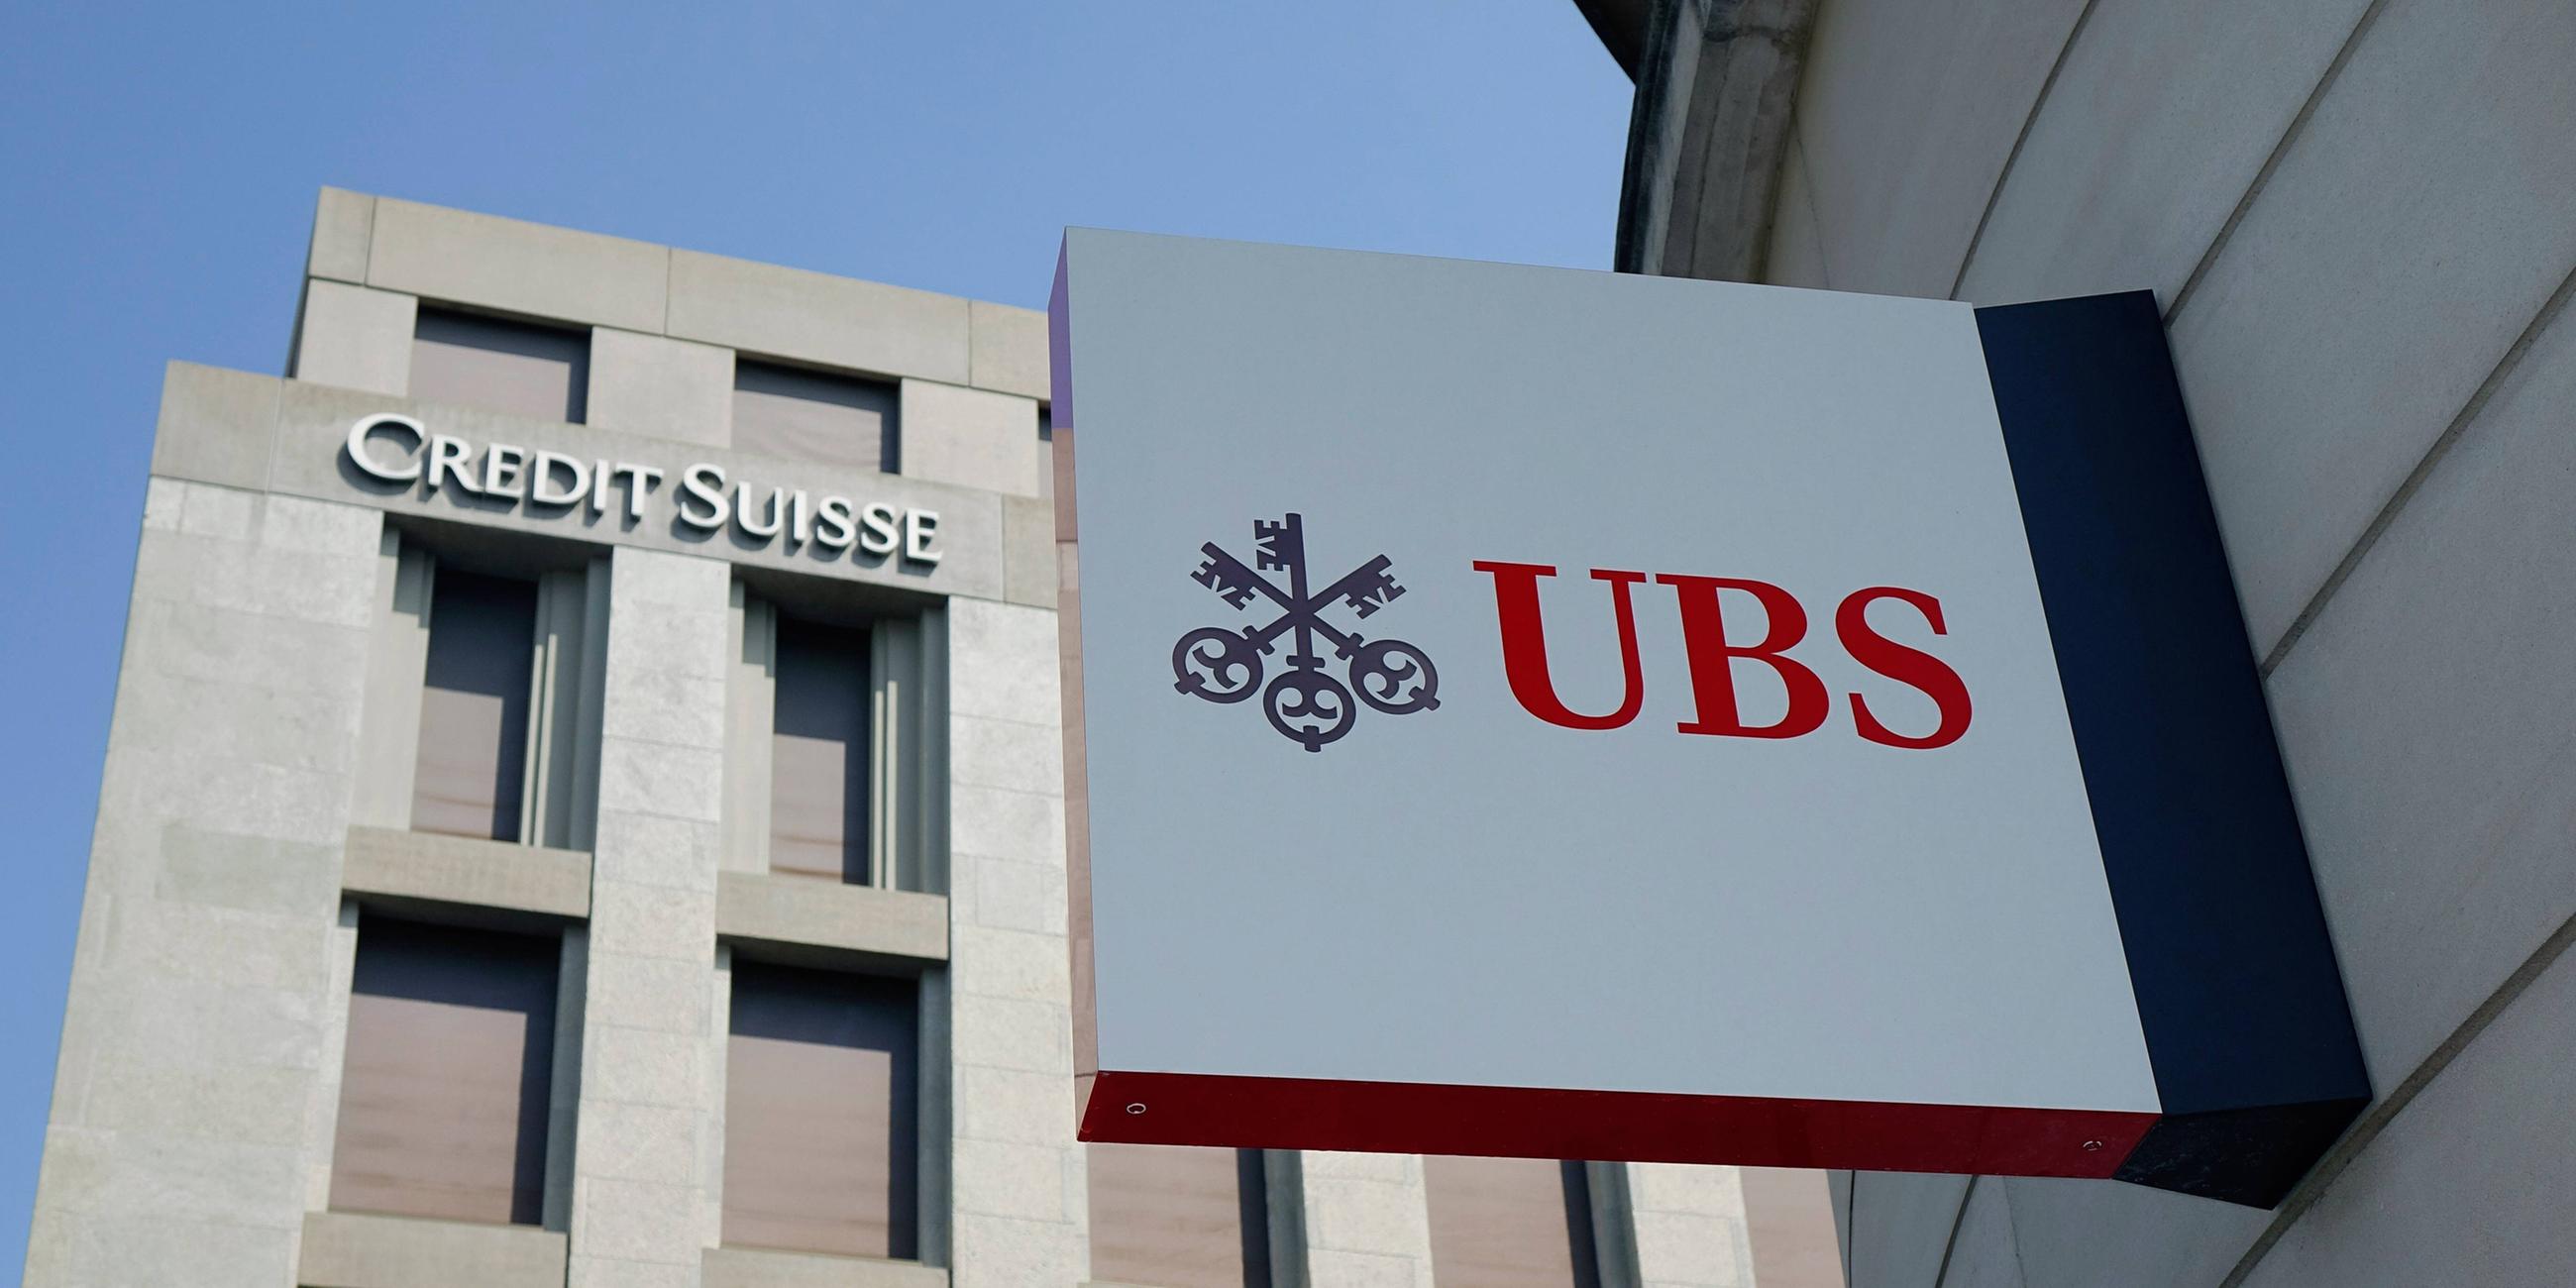 Das Bild zeigt Gebäude mit Logos der UBS und der Credit Suisse Bank in Genf.